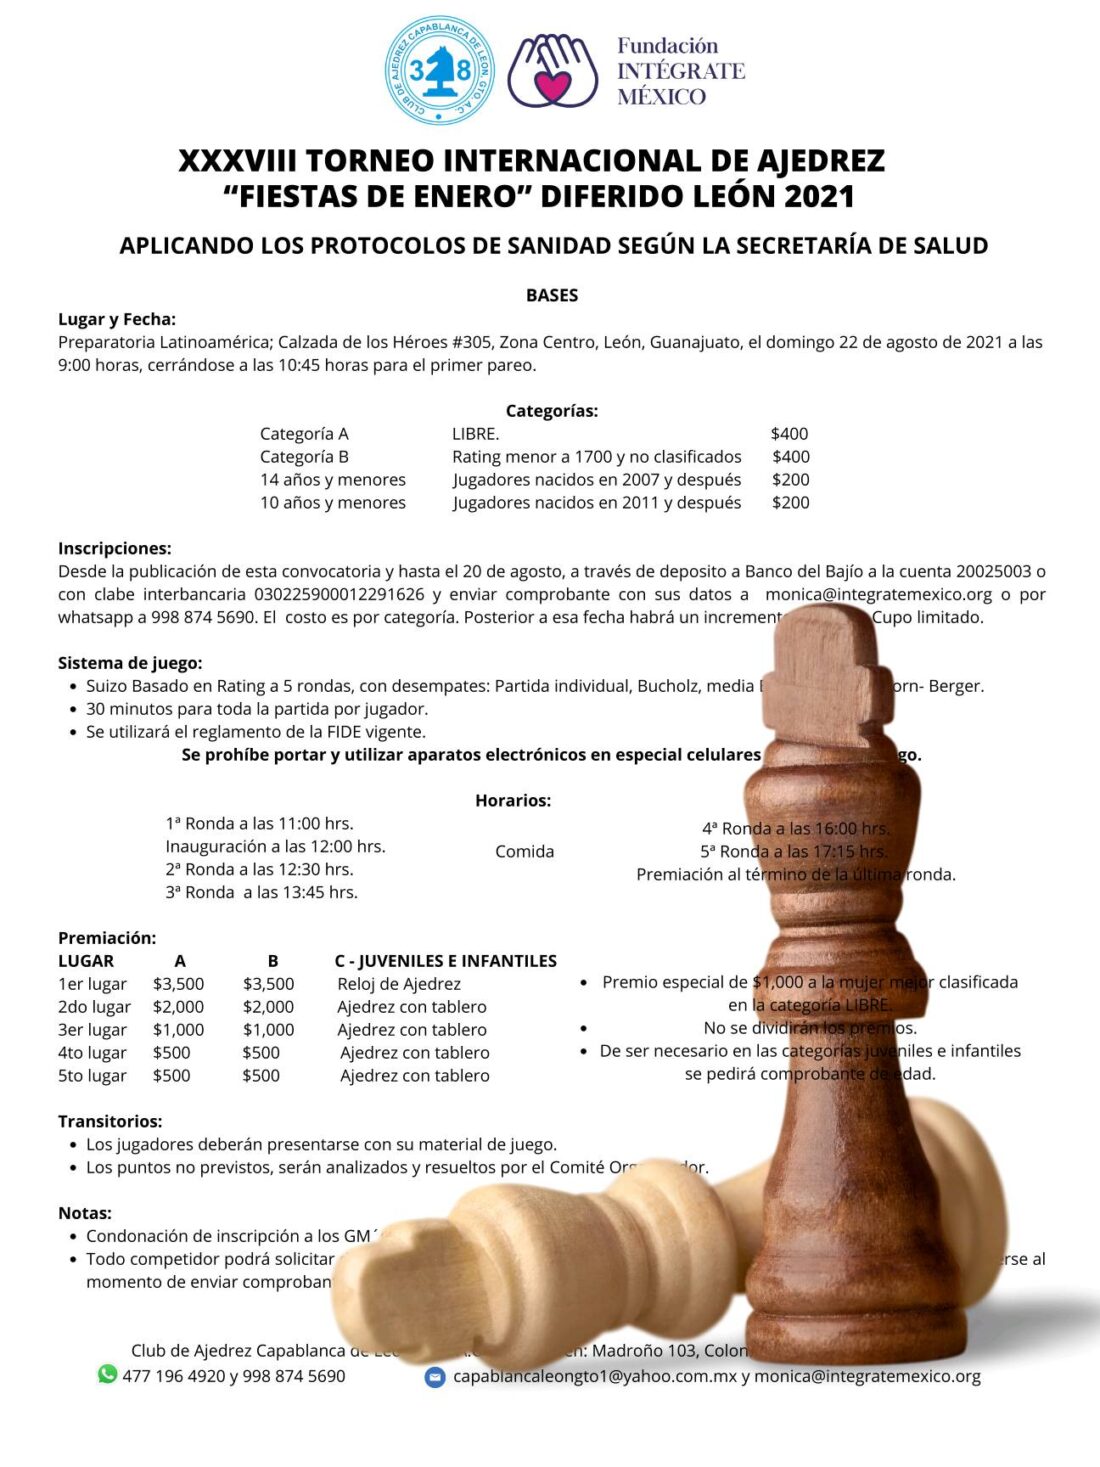 Convocatorio de  XXXVIII Torneo Internacional de Ajedrez “Fiestas de Enero” Diferido León 2021